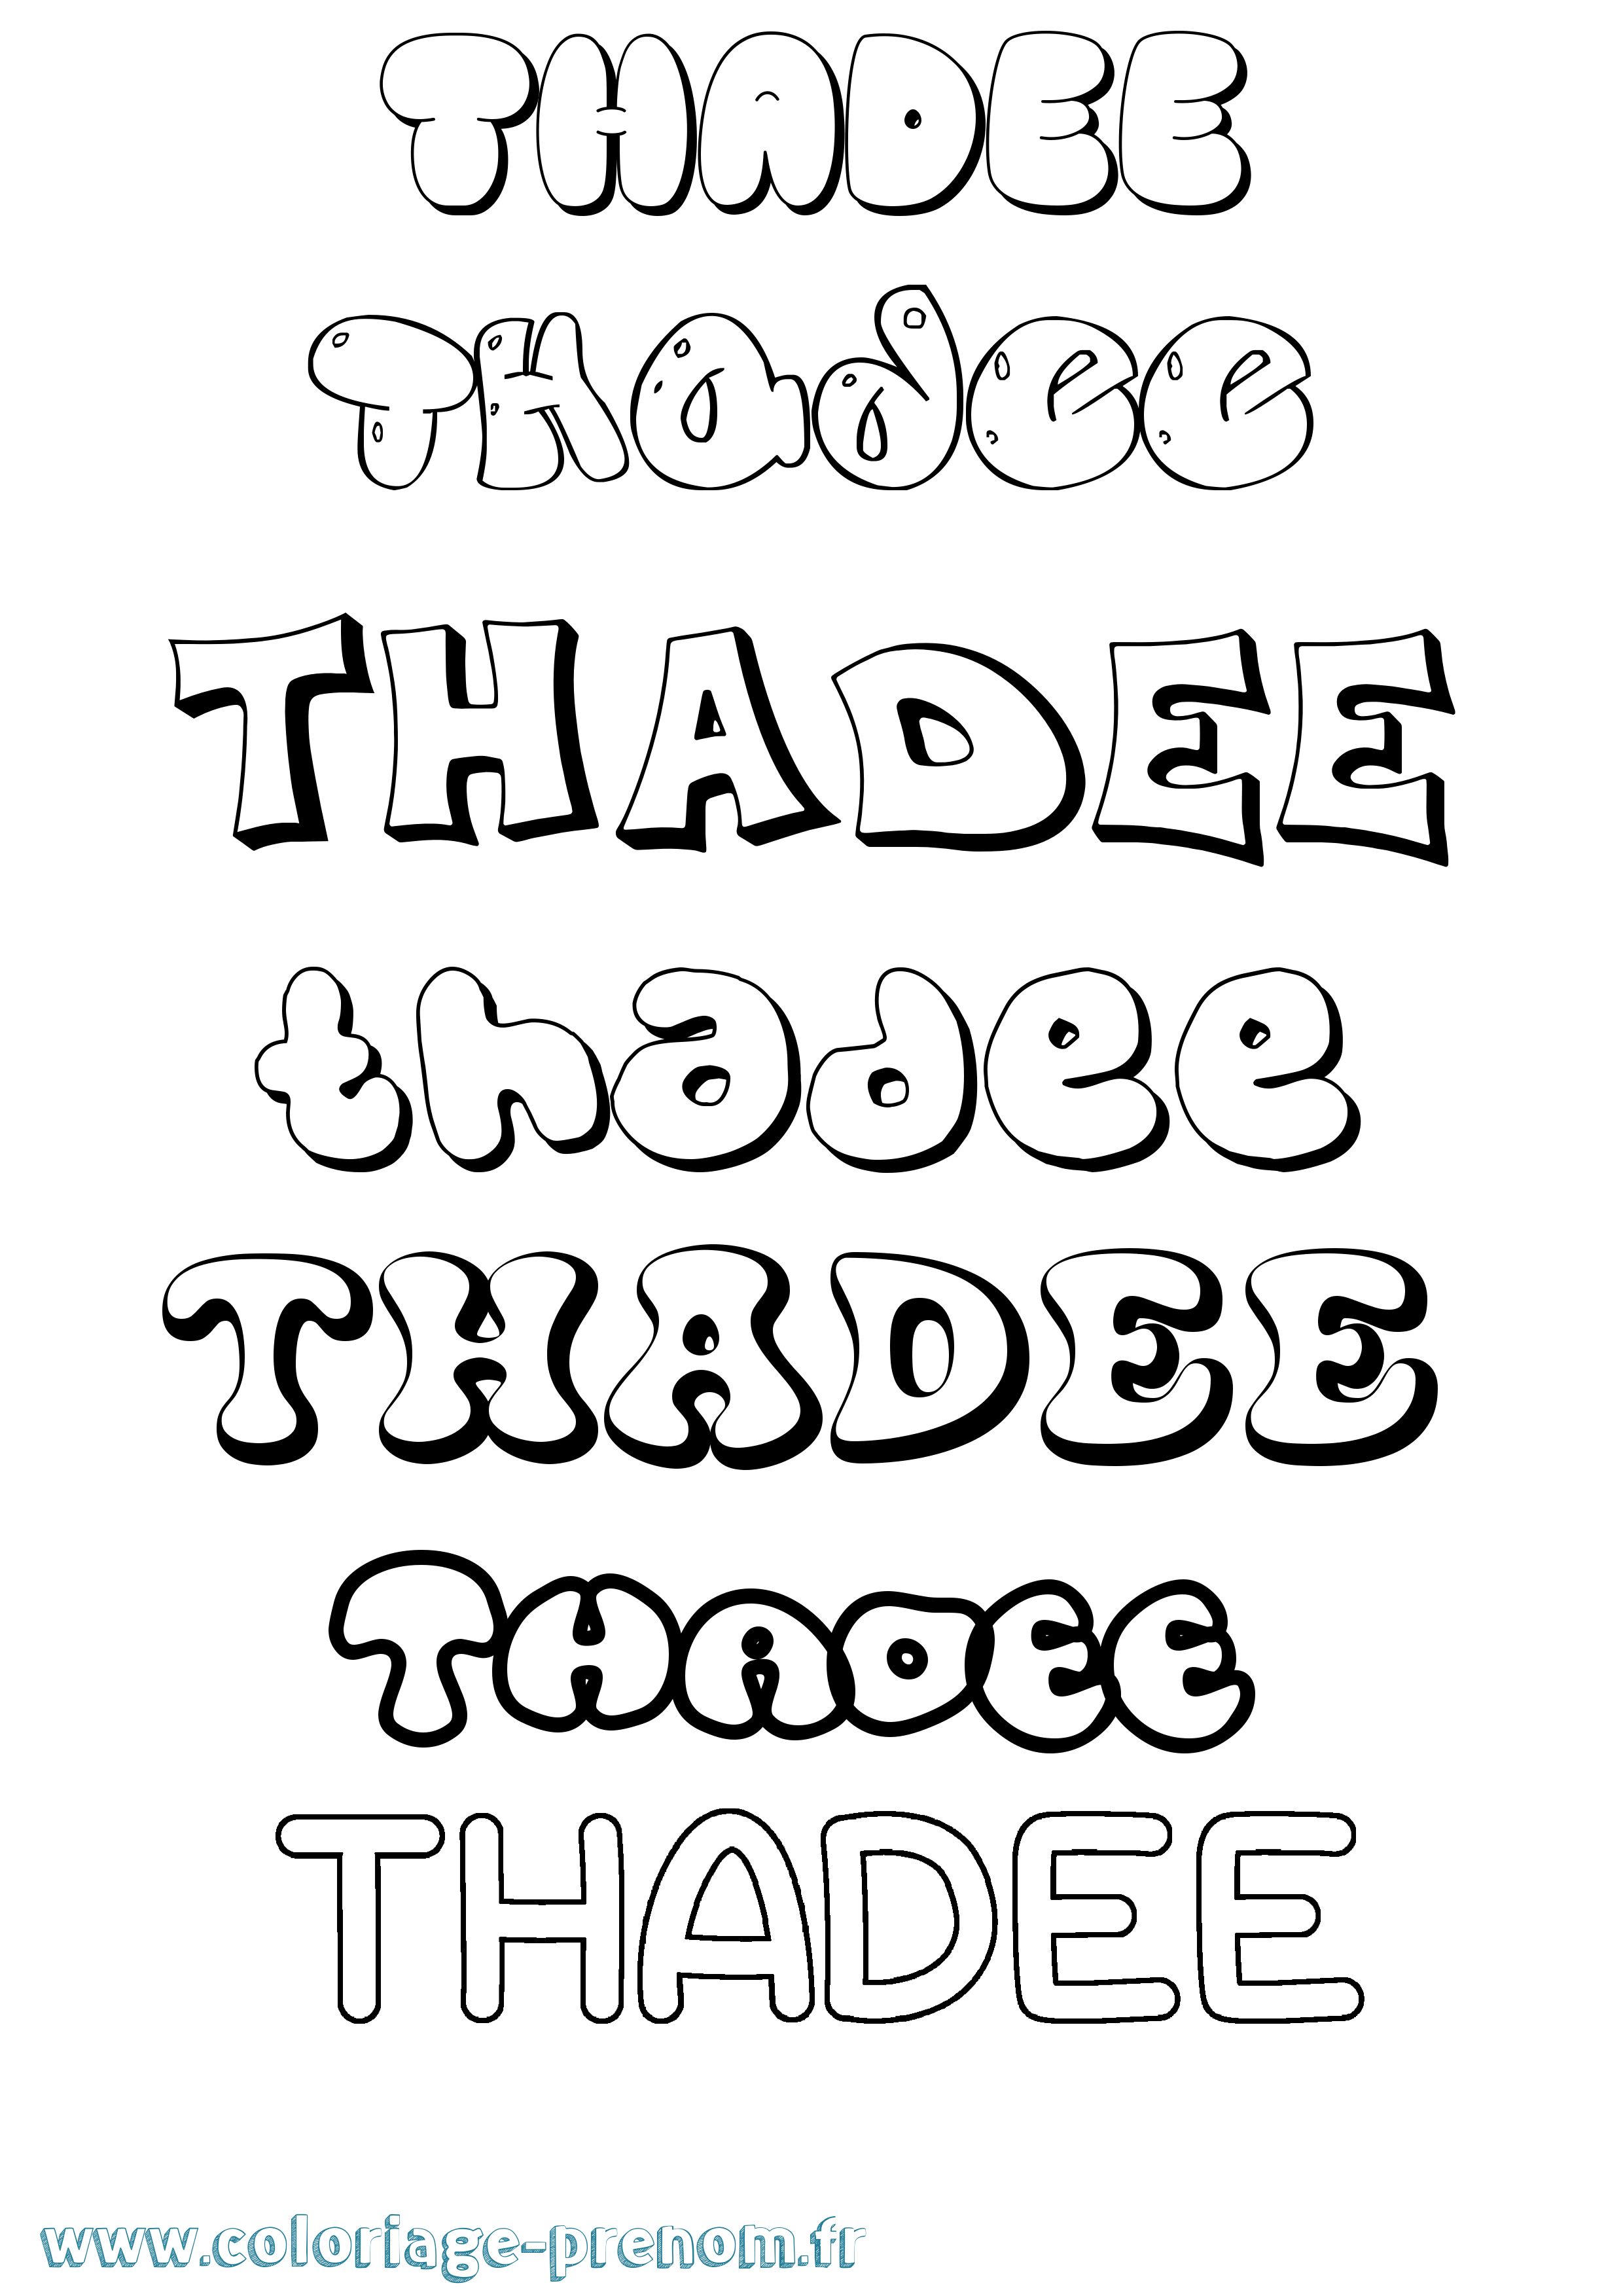 Coloriage prénom Thadee Bubble